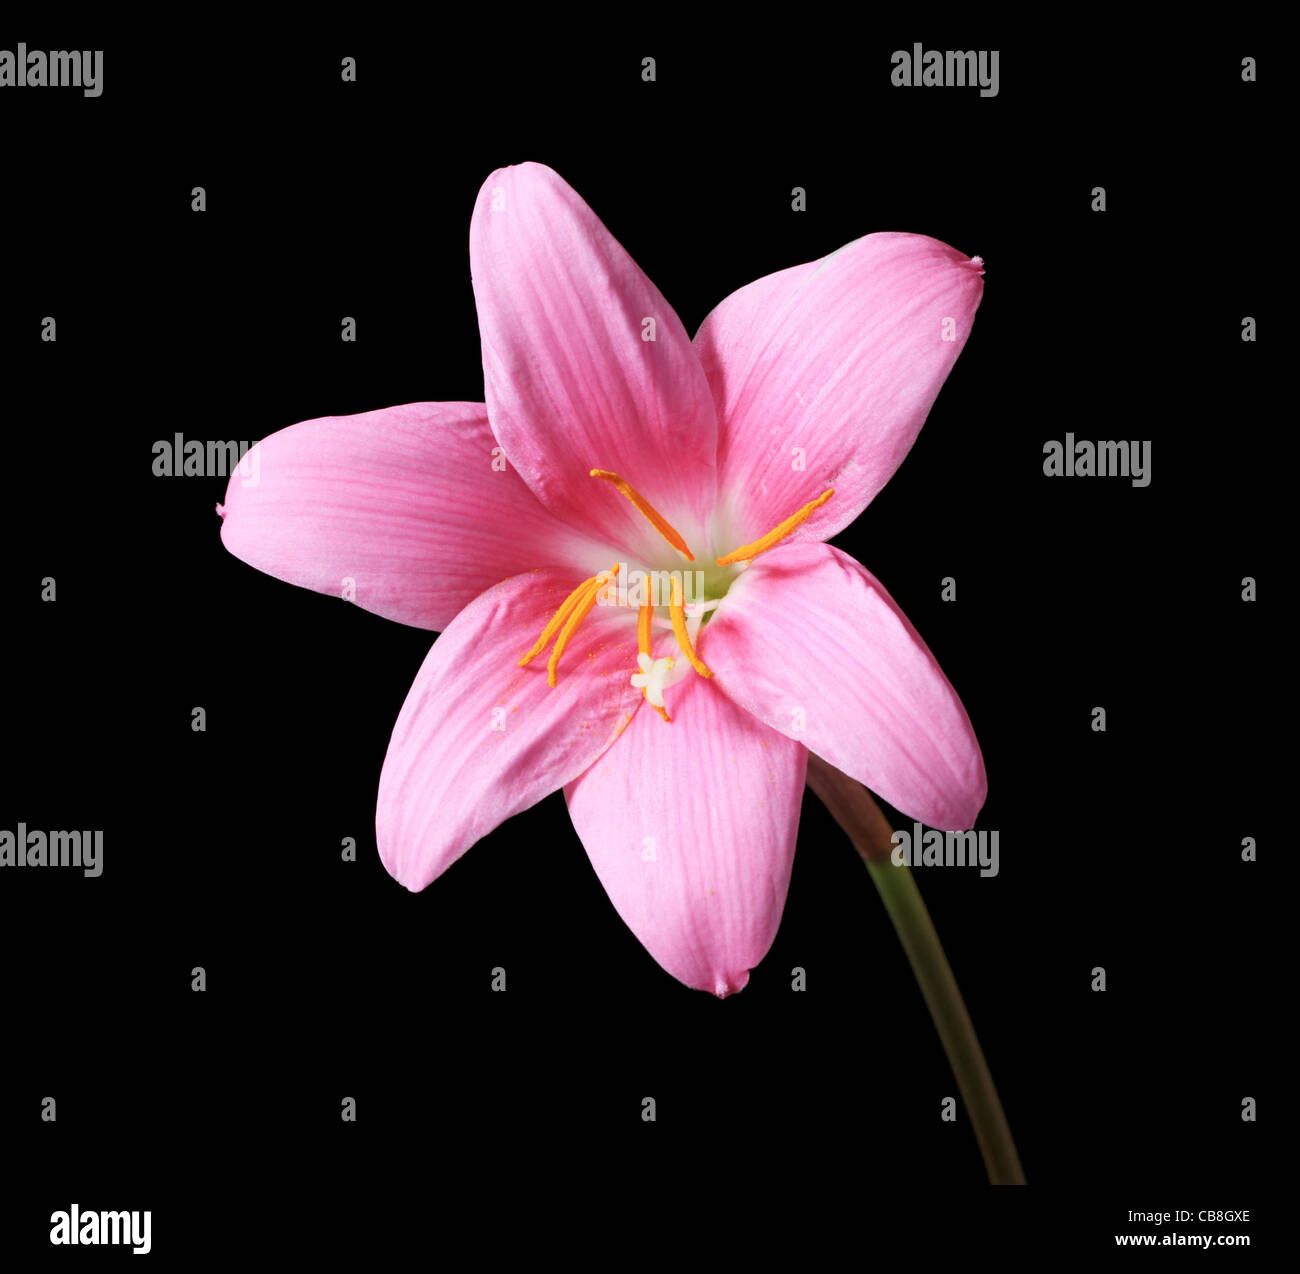 Rosa giglio di pioggia (Zephyranthes) Fiore con sfondo scuro Foto Stock